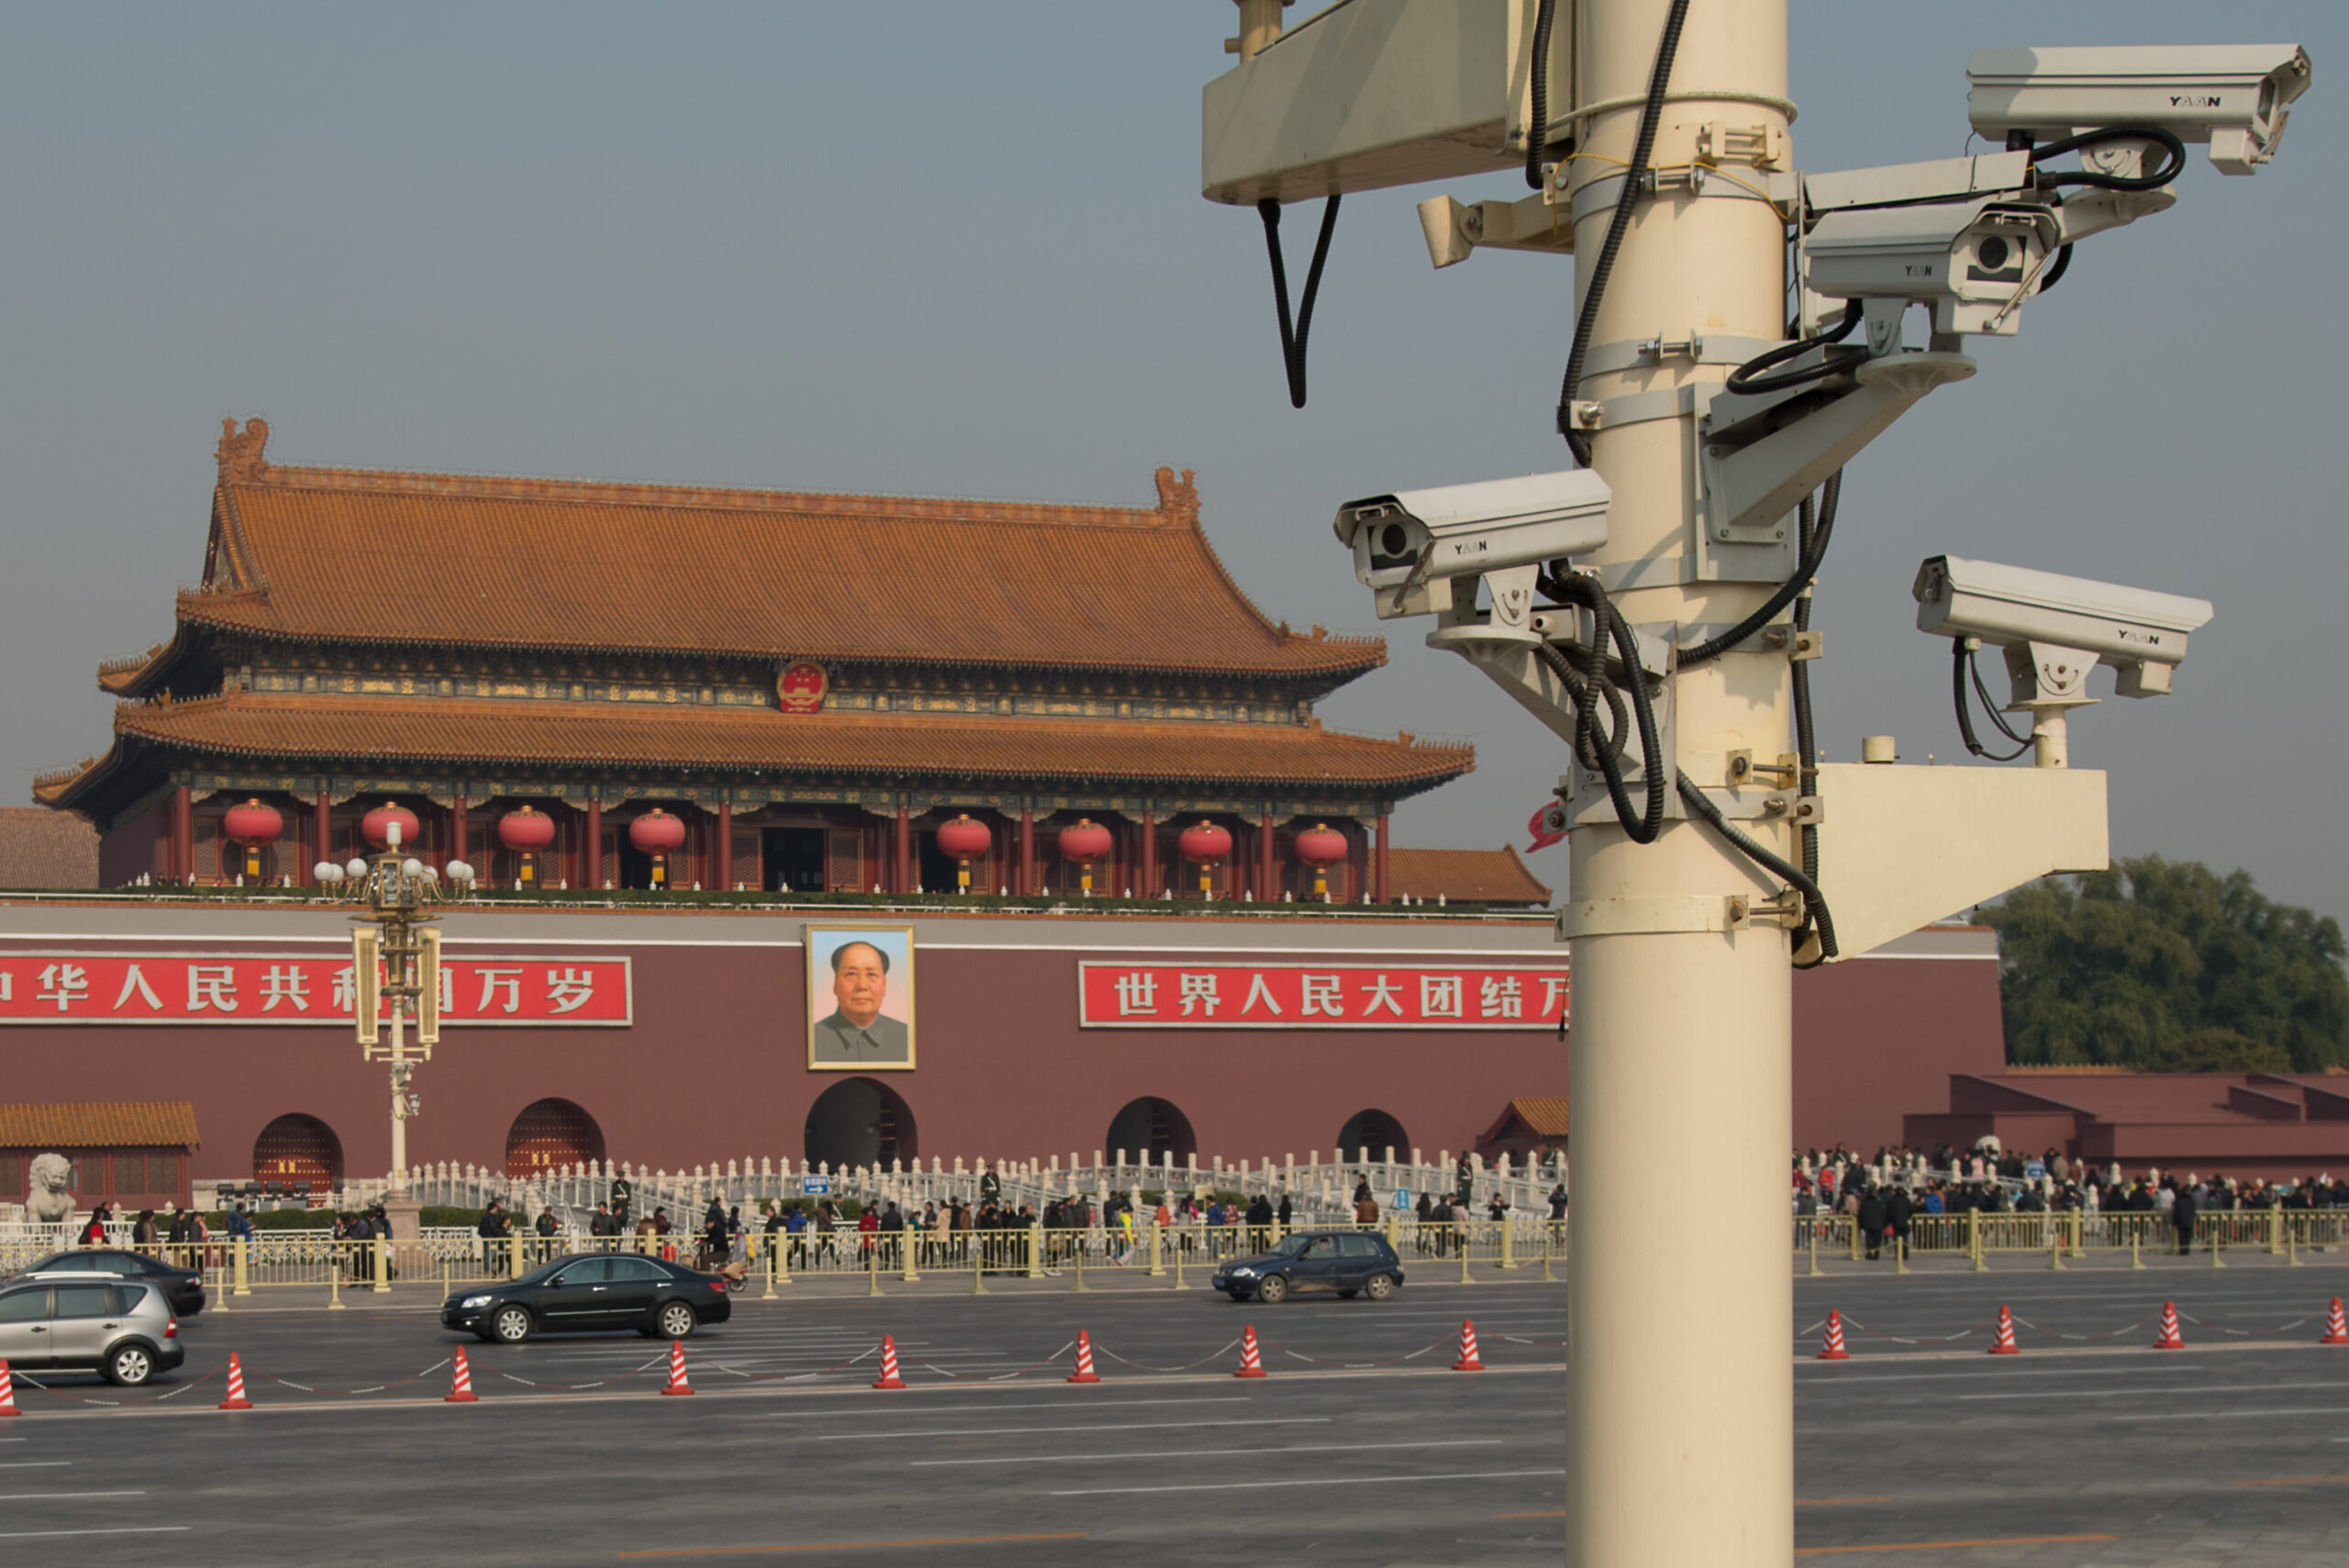 Overvågningskameraer med udsigt over Den Himmelske Freds Plads i Beijing, Kina. Der er en fjern plakat af Mao Zedong.